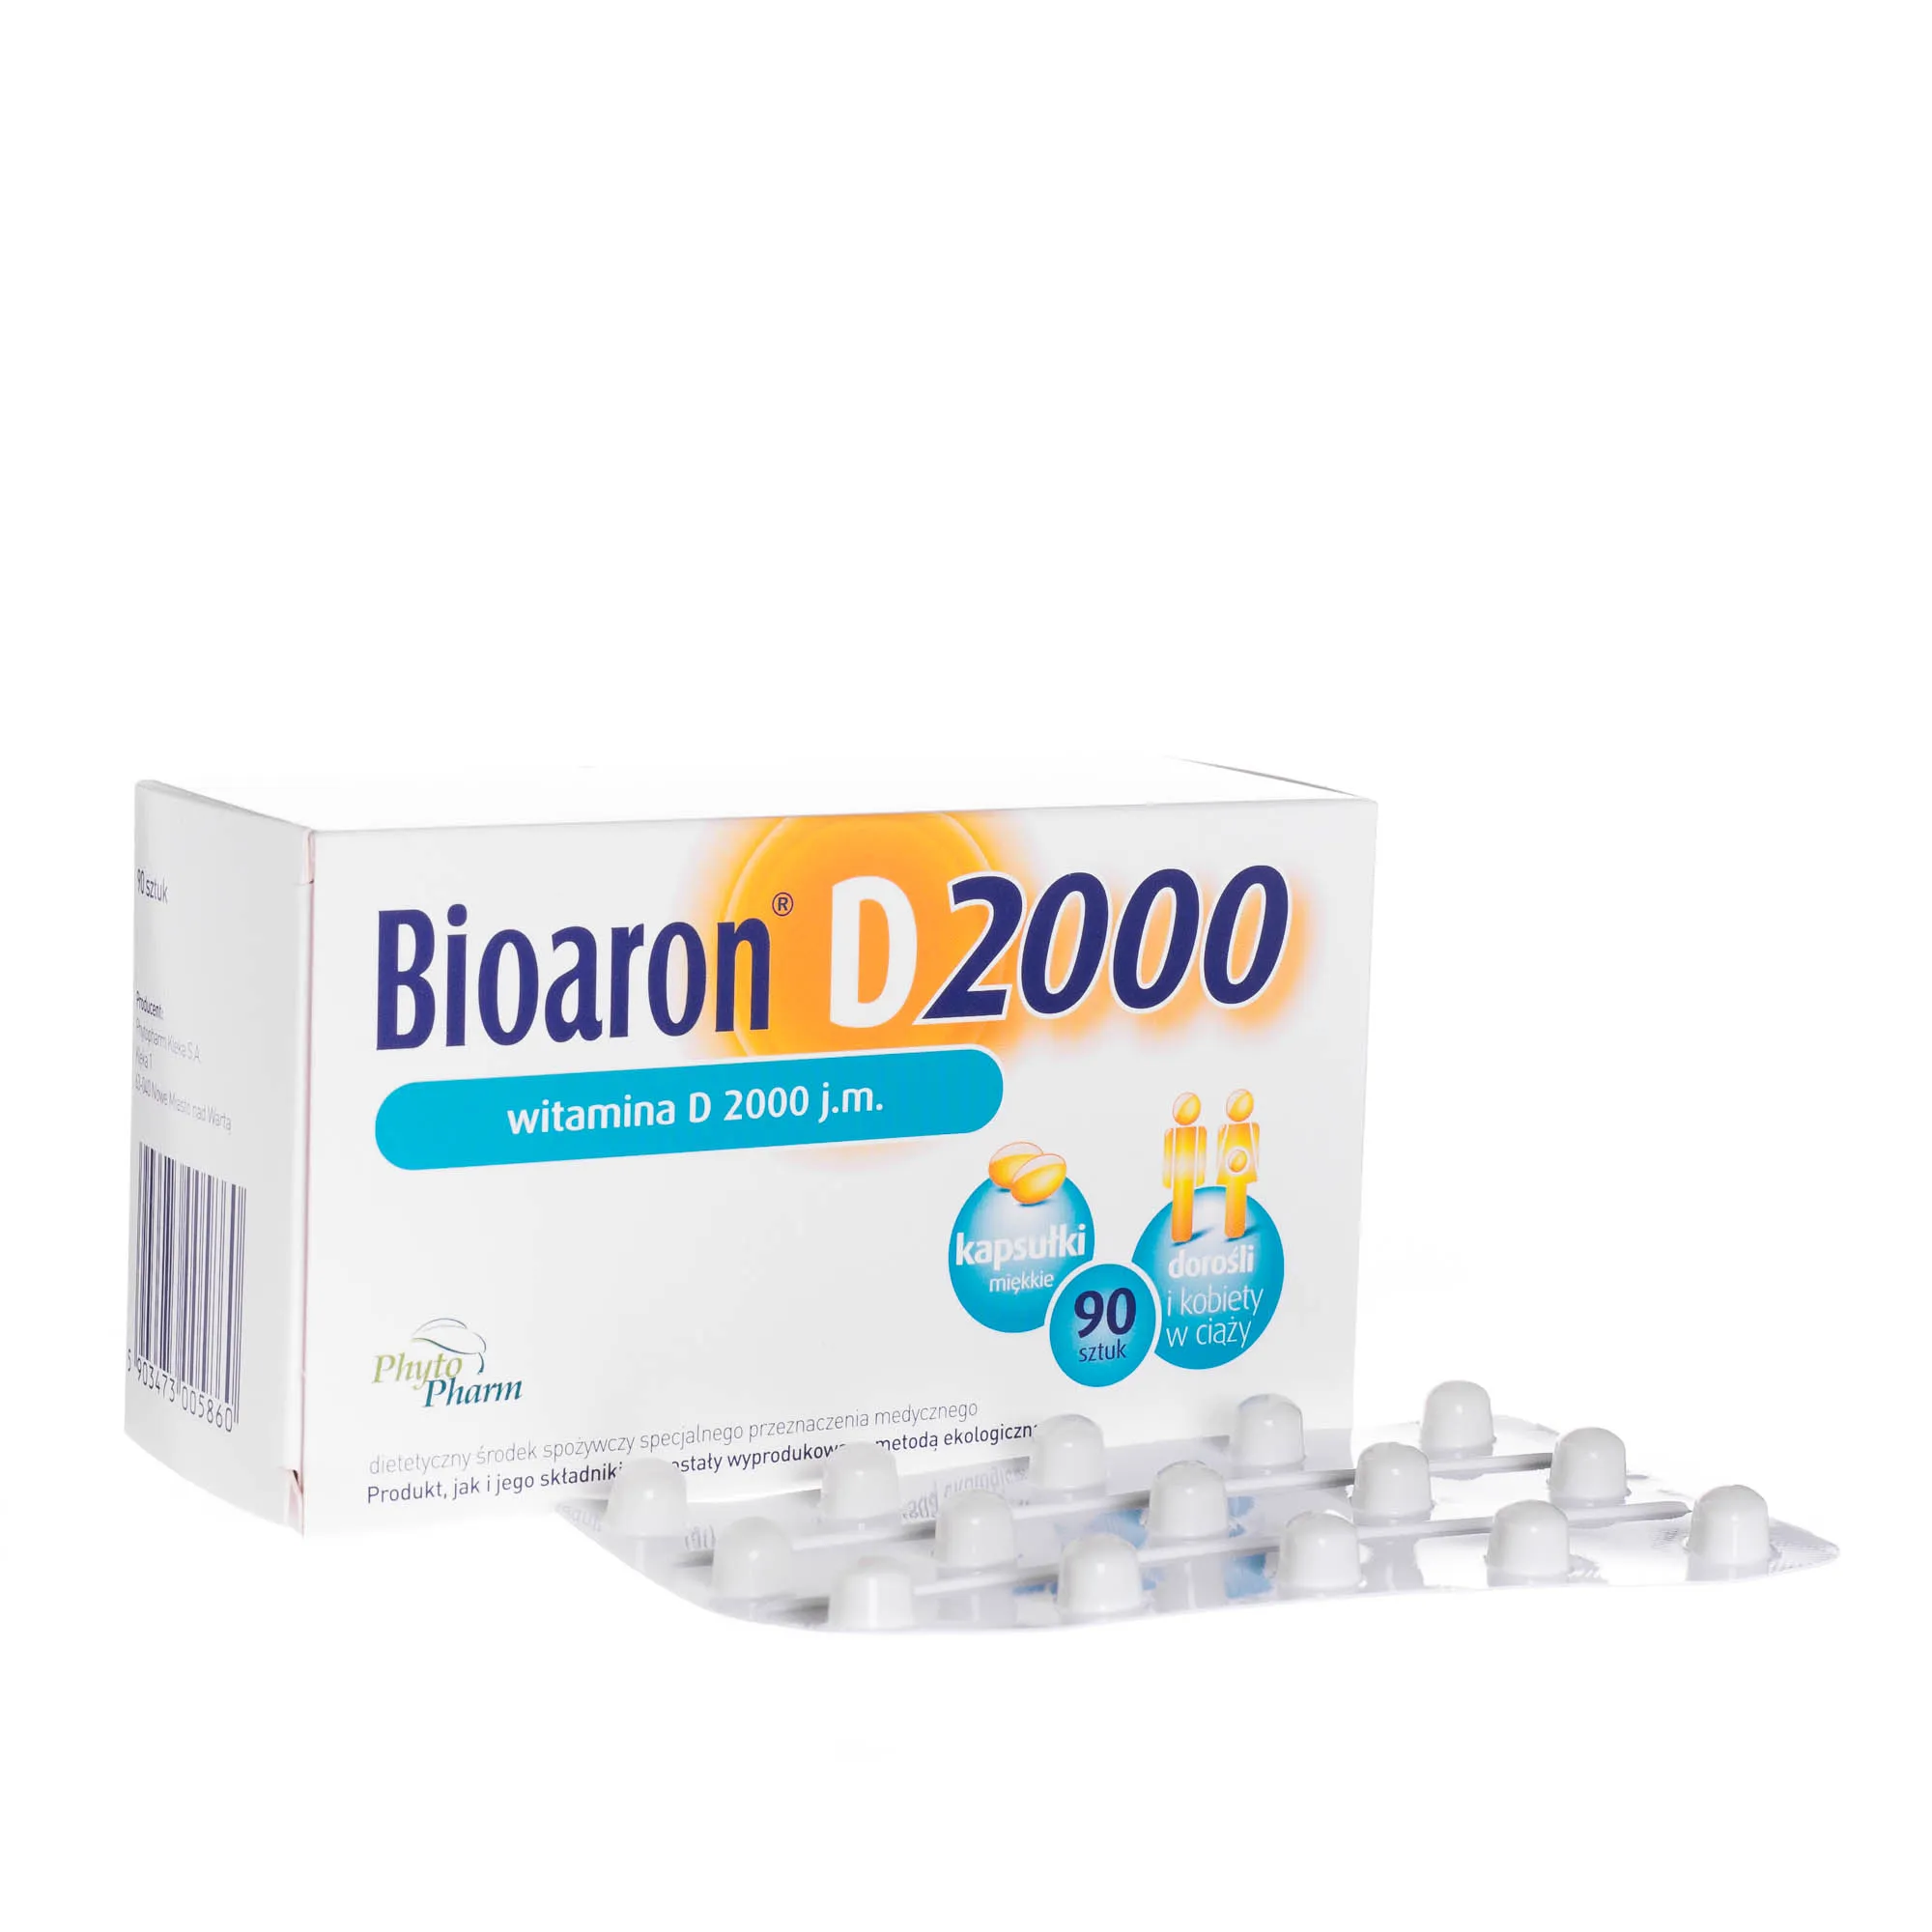 Bioaron D 2000, j.m dorośli i kobiety w ciąży, 90 kapsułek miękkich